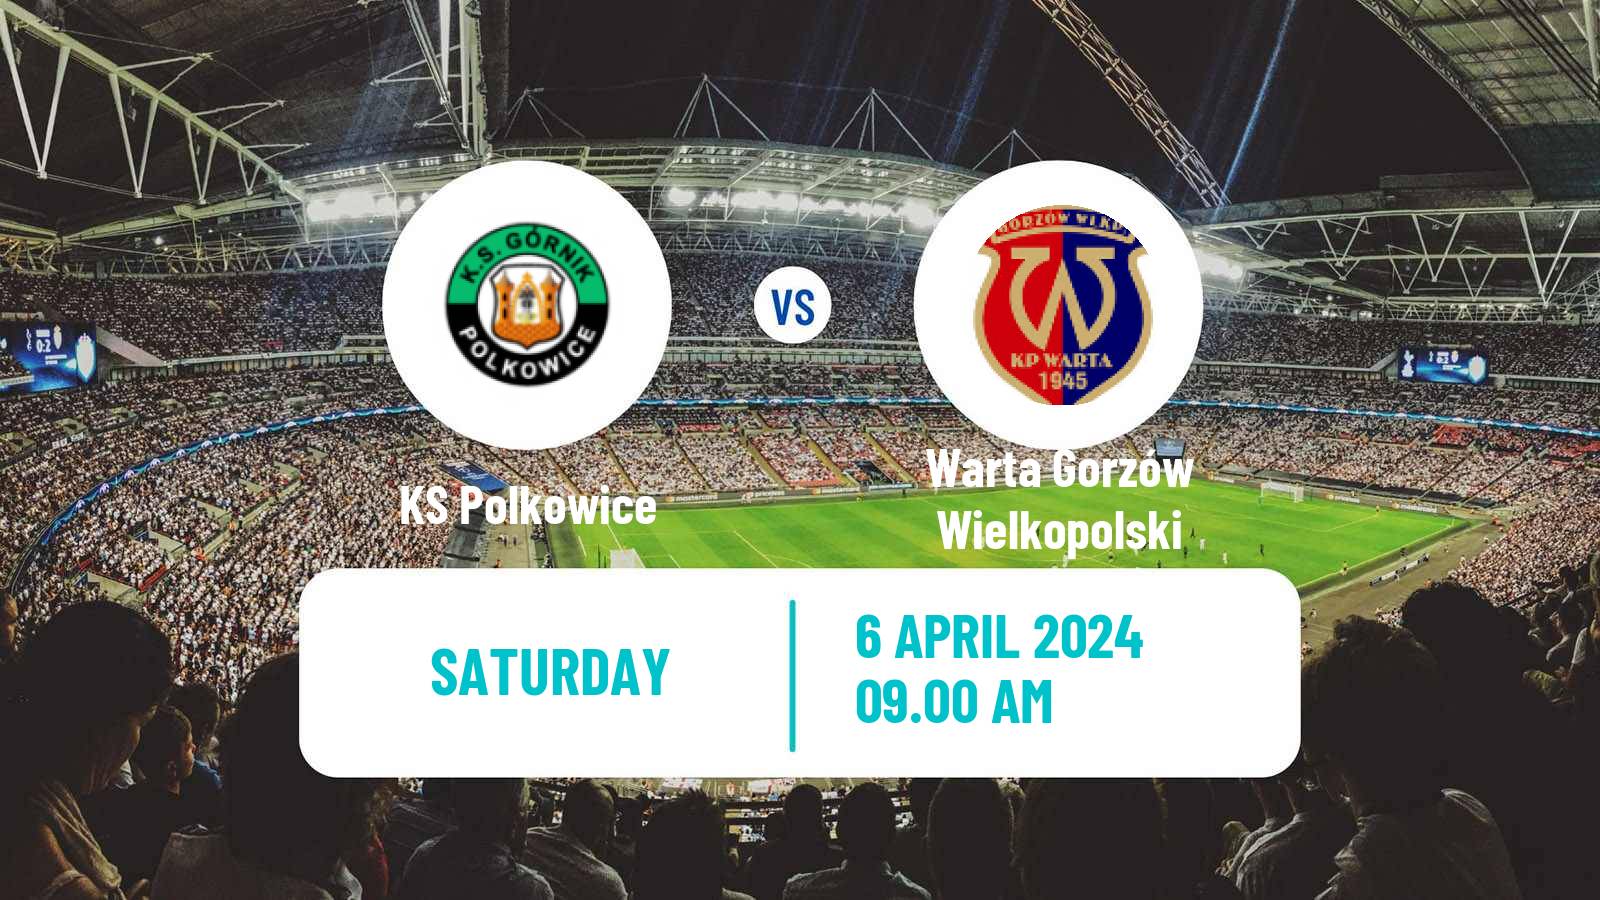 Soccer Polish Division 3 - Group III Polkowice - Warta Gorzów Wielkopolski